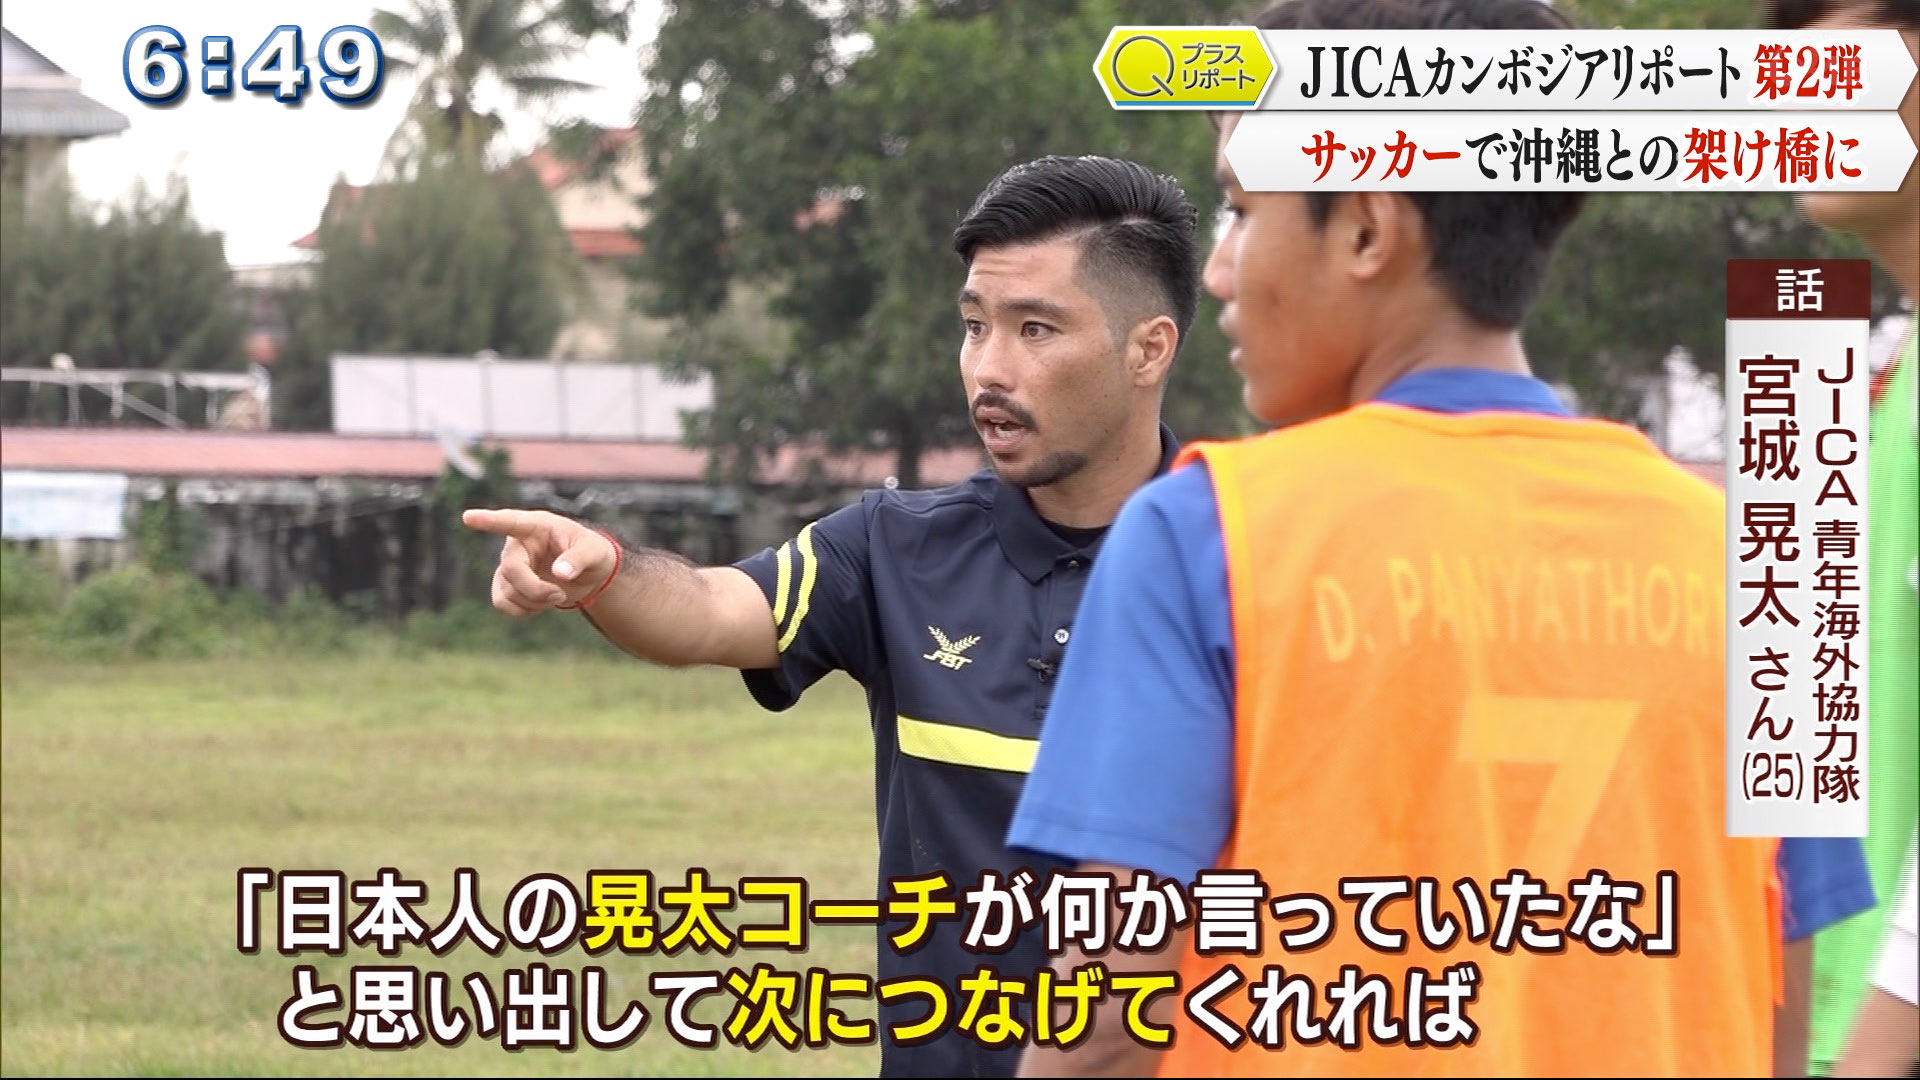 日本人の晃太コーチが何か言っていたなと、思いだして次につなげてくれれば